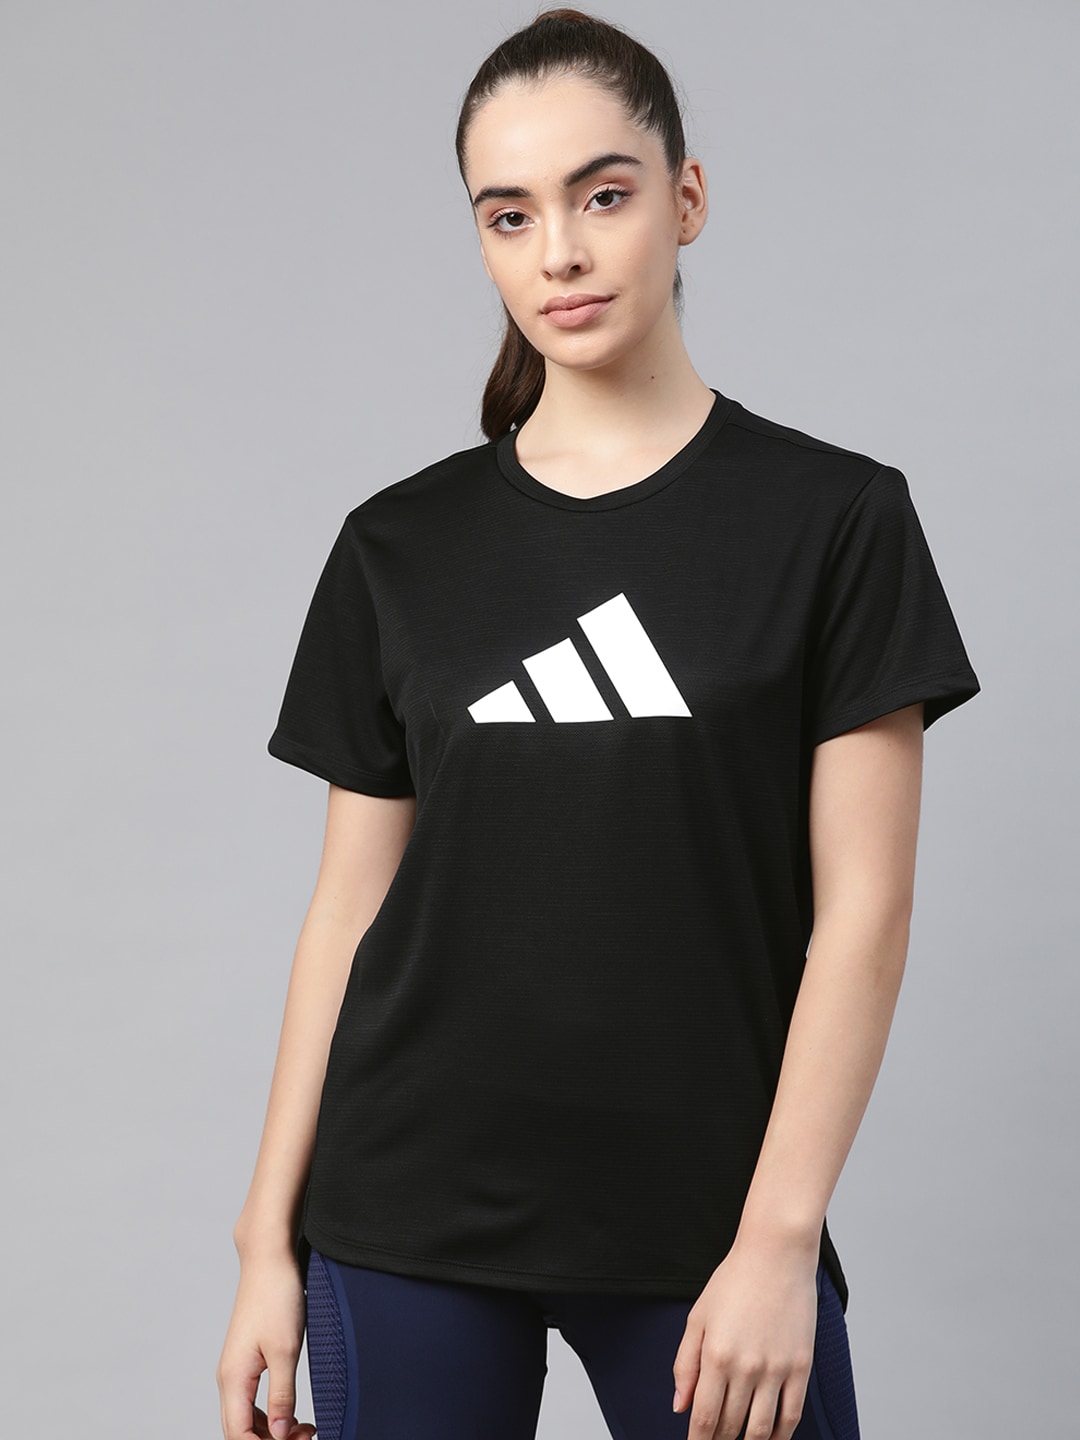 ADIDAS Women Black & White Brand Logo Print 3 Bar Logo T-Shirt Price in India